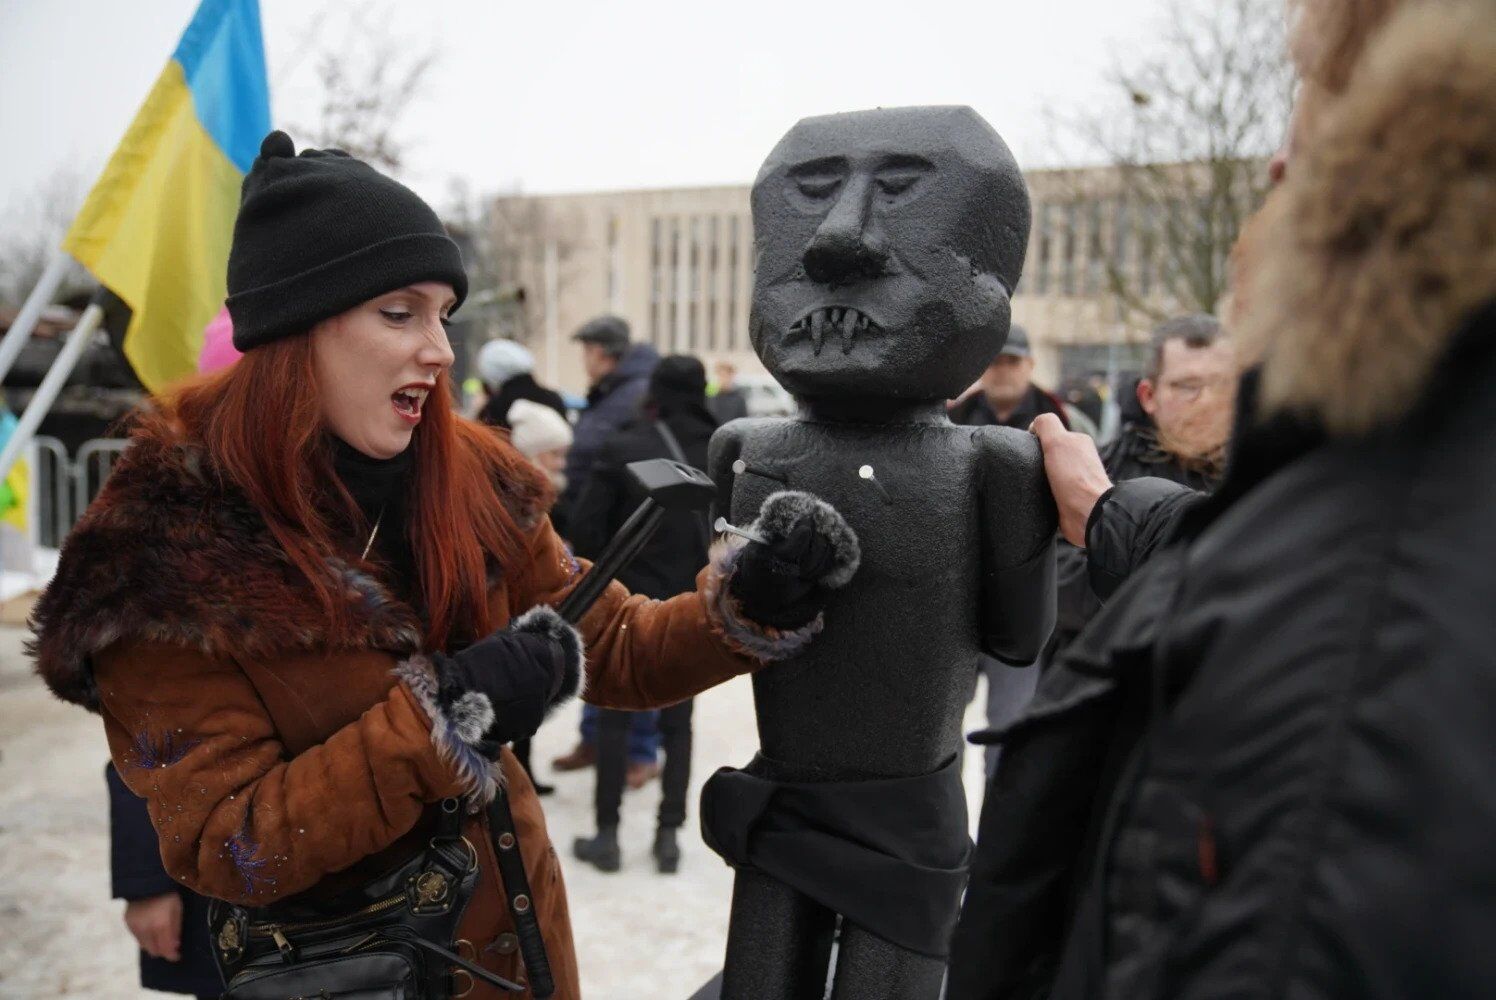 Забить гвоздь может каждый желающий: в Риге у посольства РФ установили гигантскую куклу вуду в виде Путина. Фото